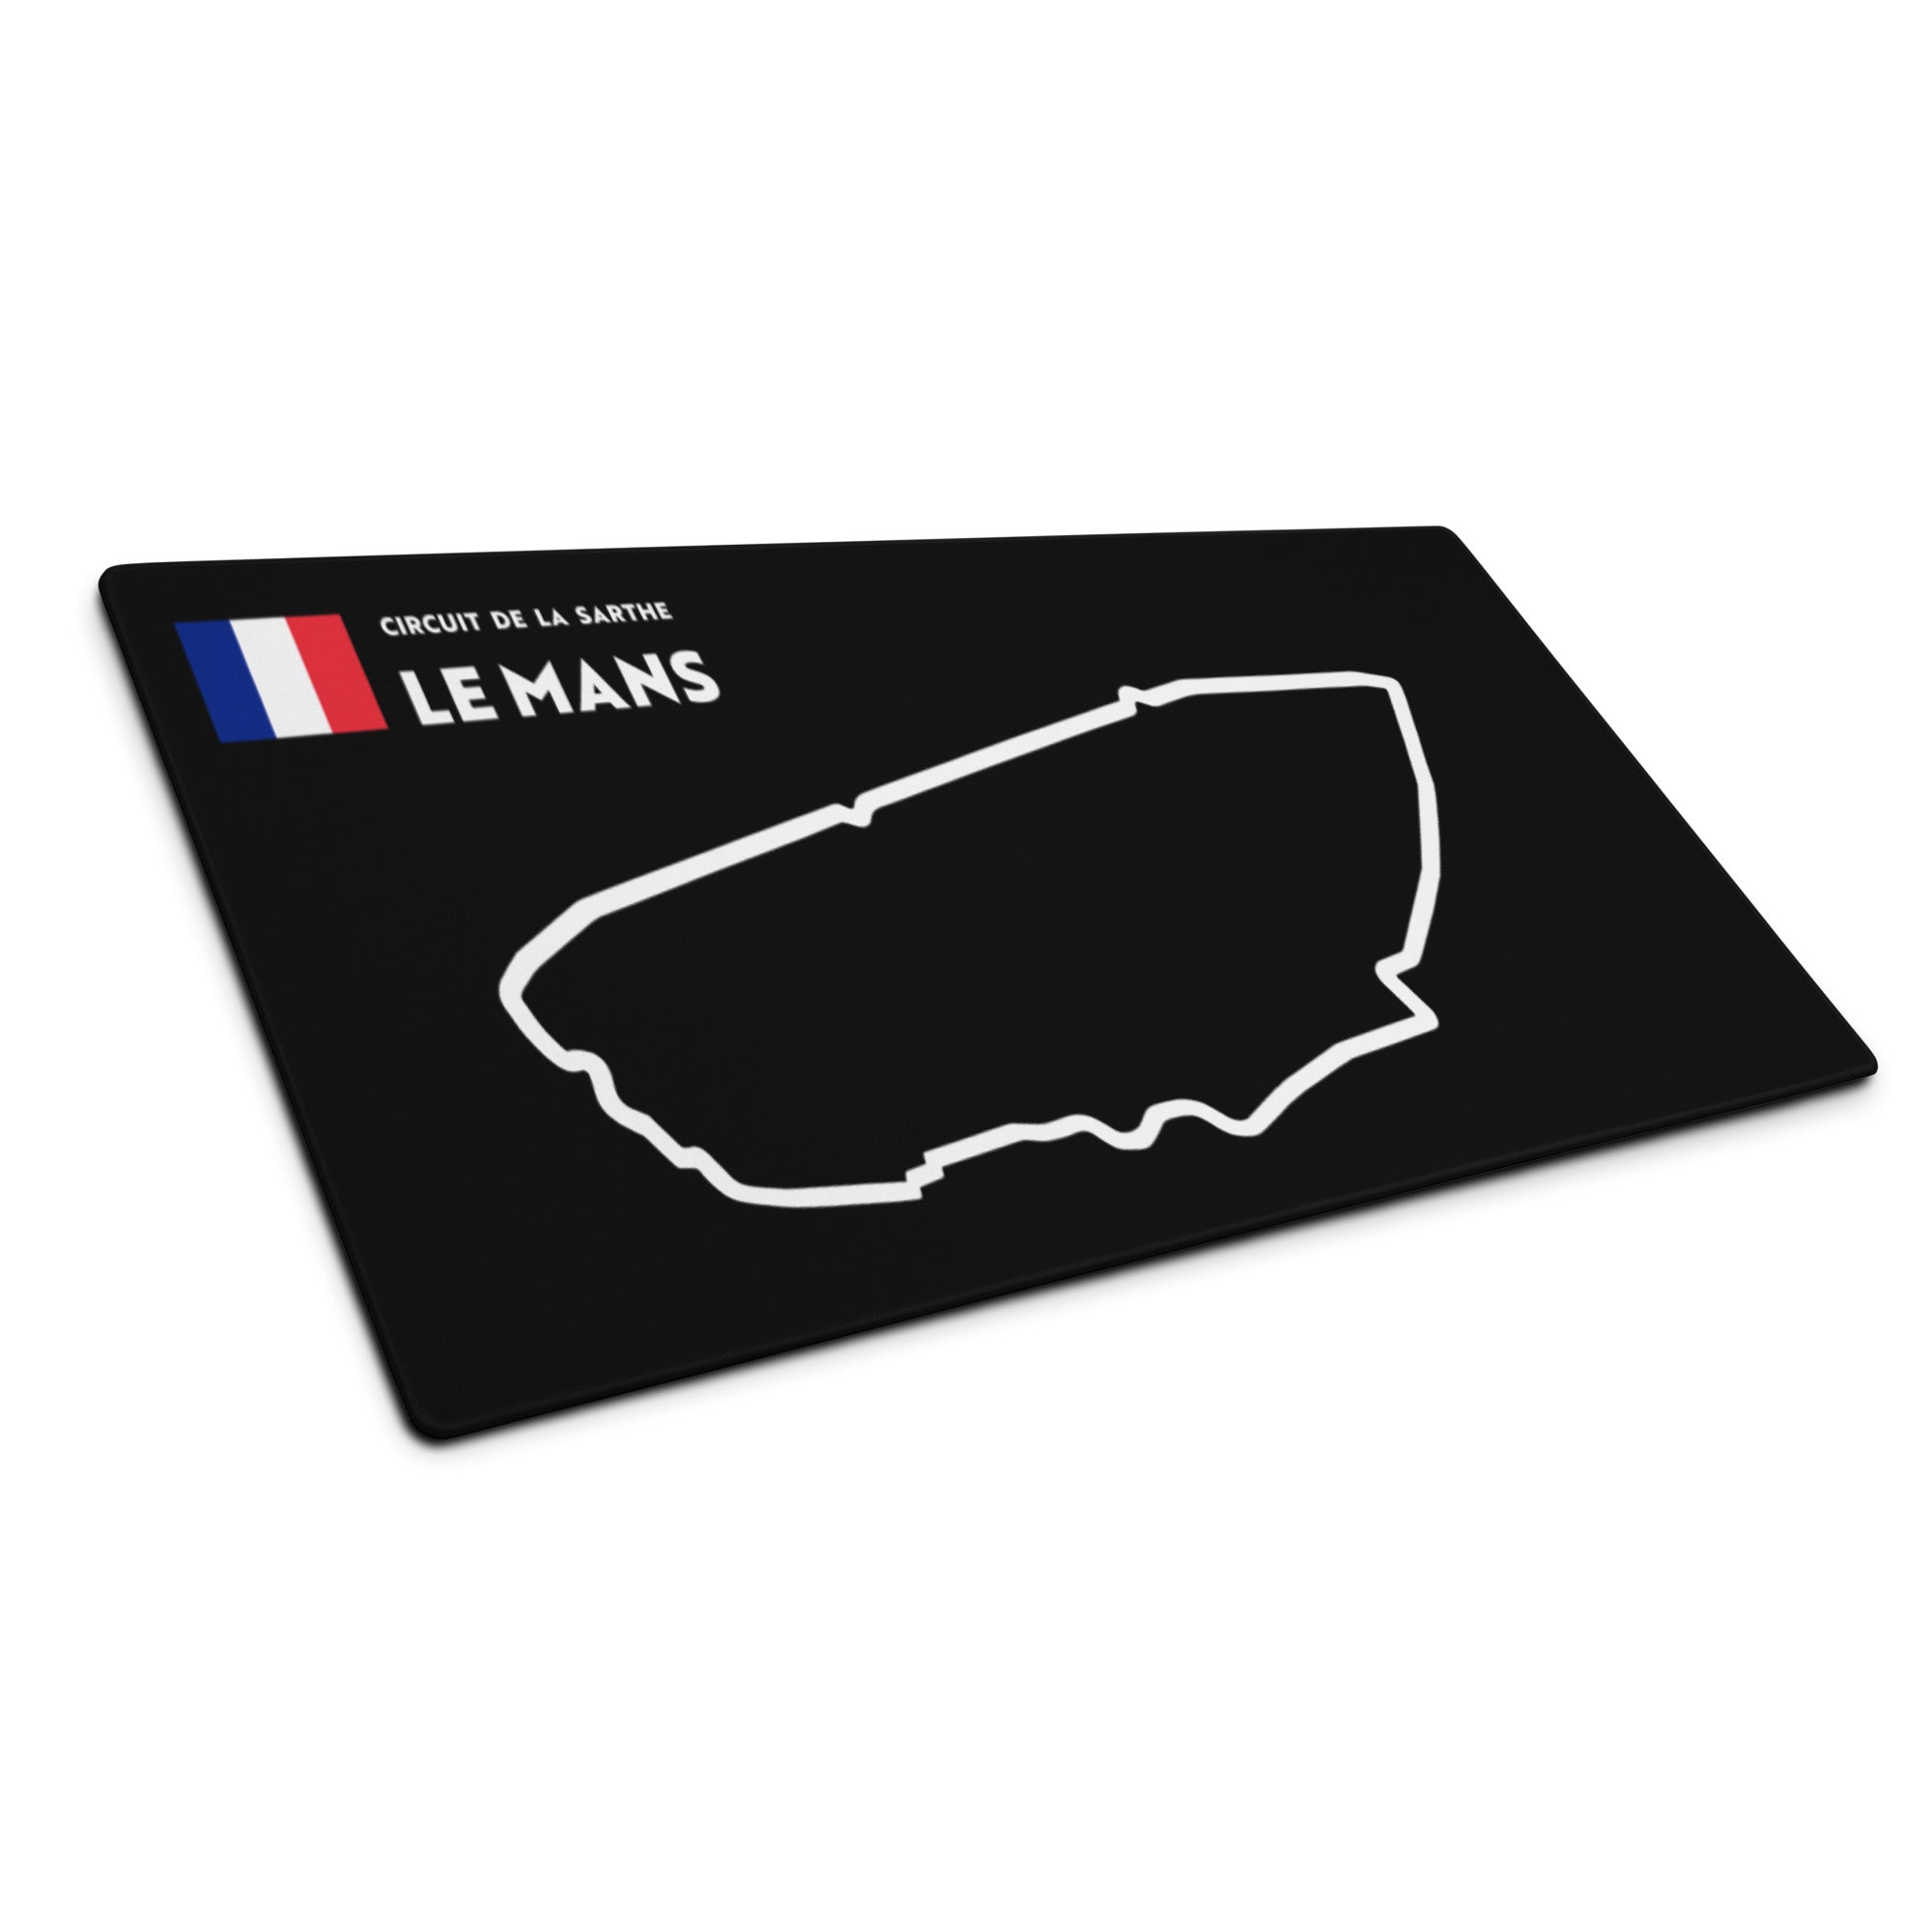 Circuit de la Sarthe 24 hours of Le Mans race circuit large gaming mouse pad